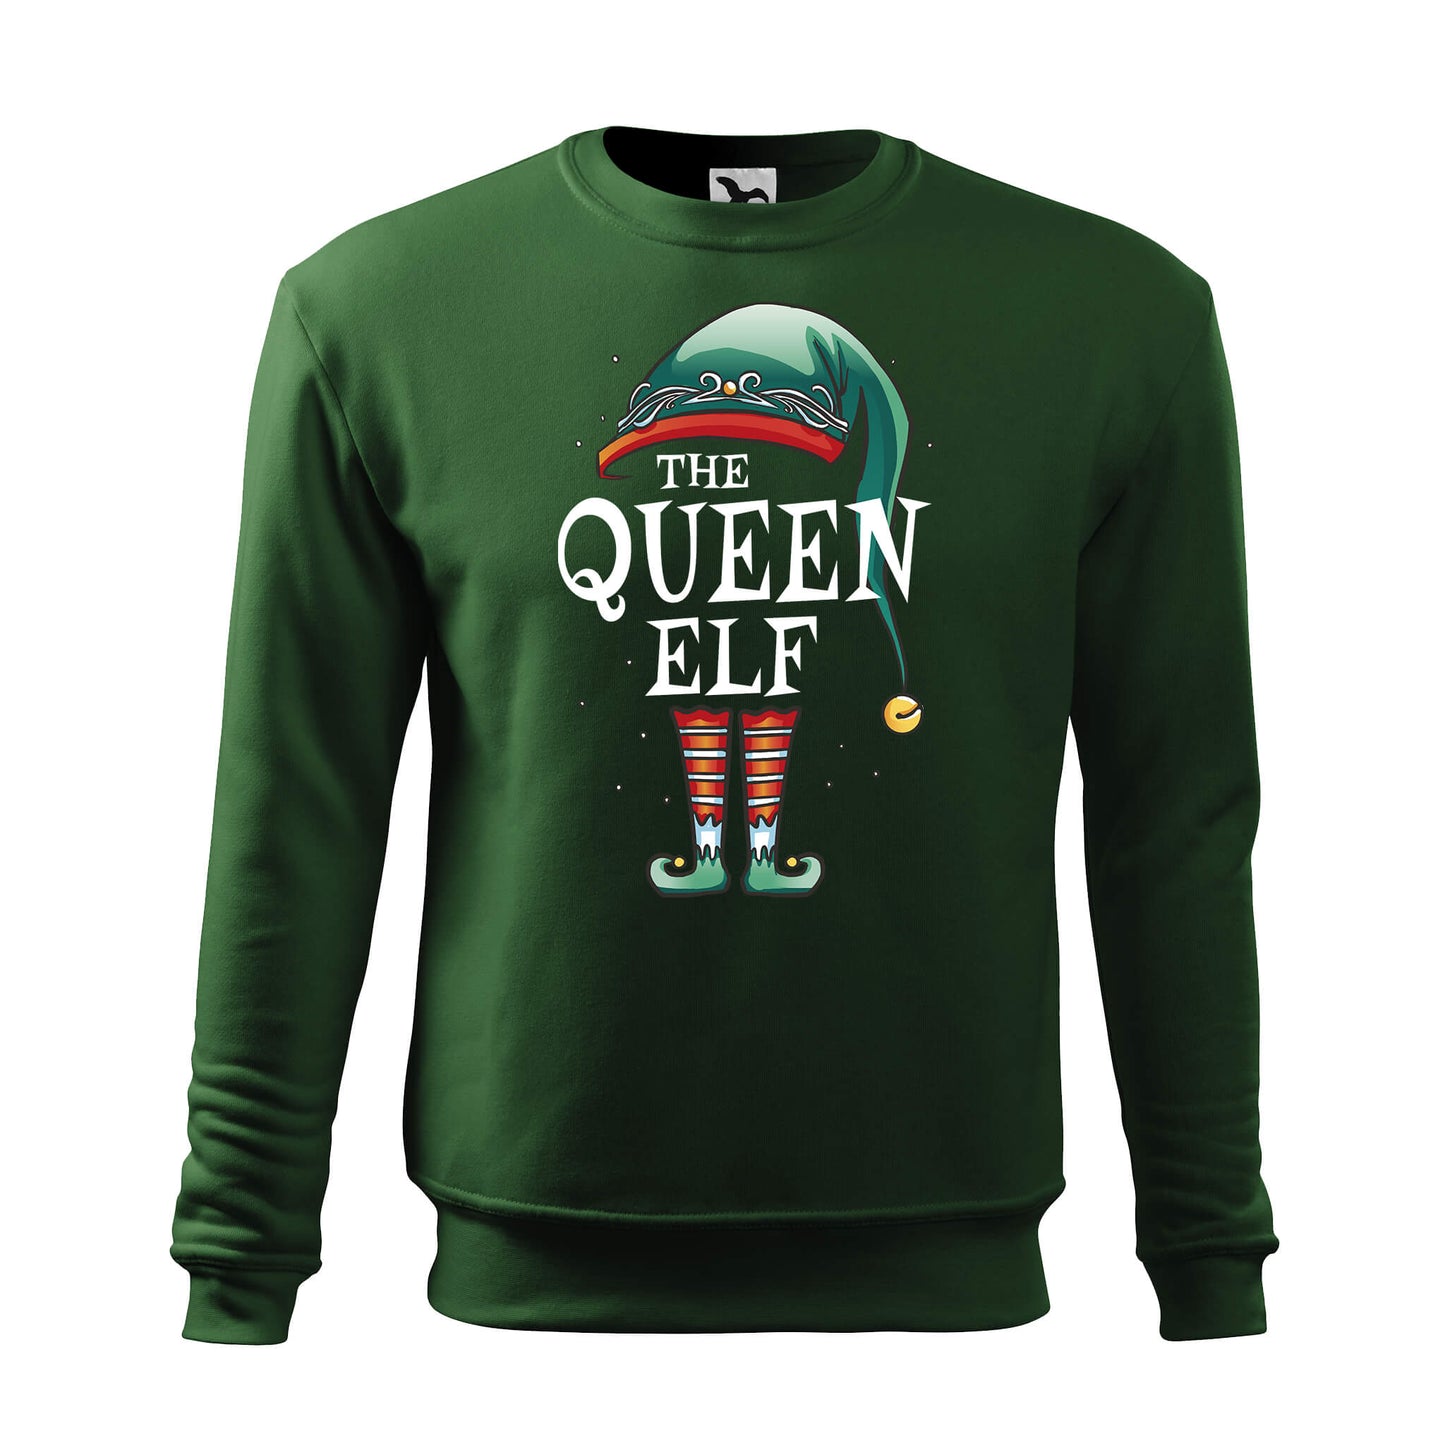 Queen elf sweatshirt - rvdesignprint